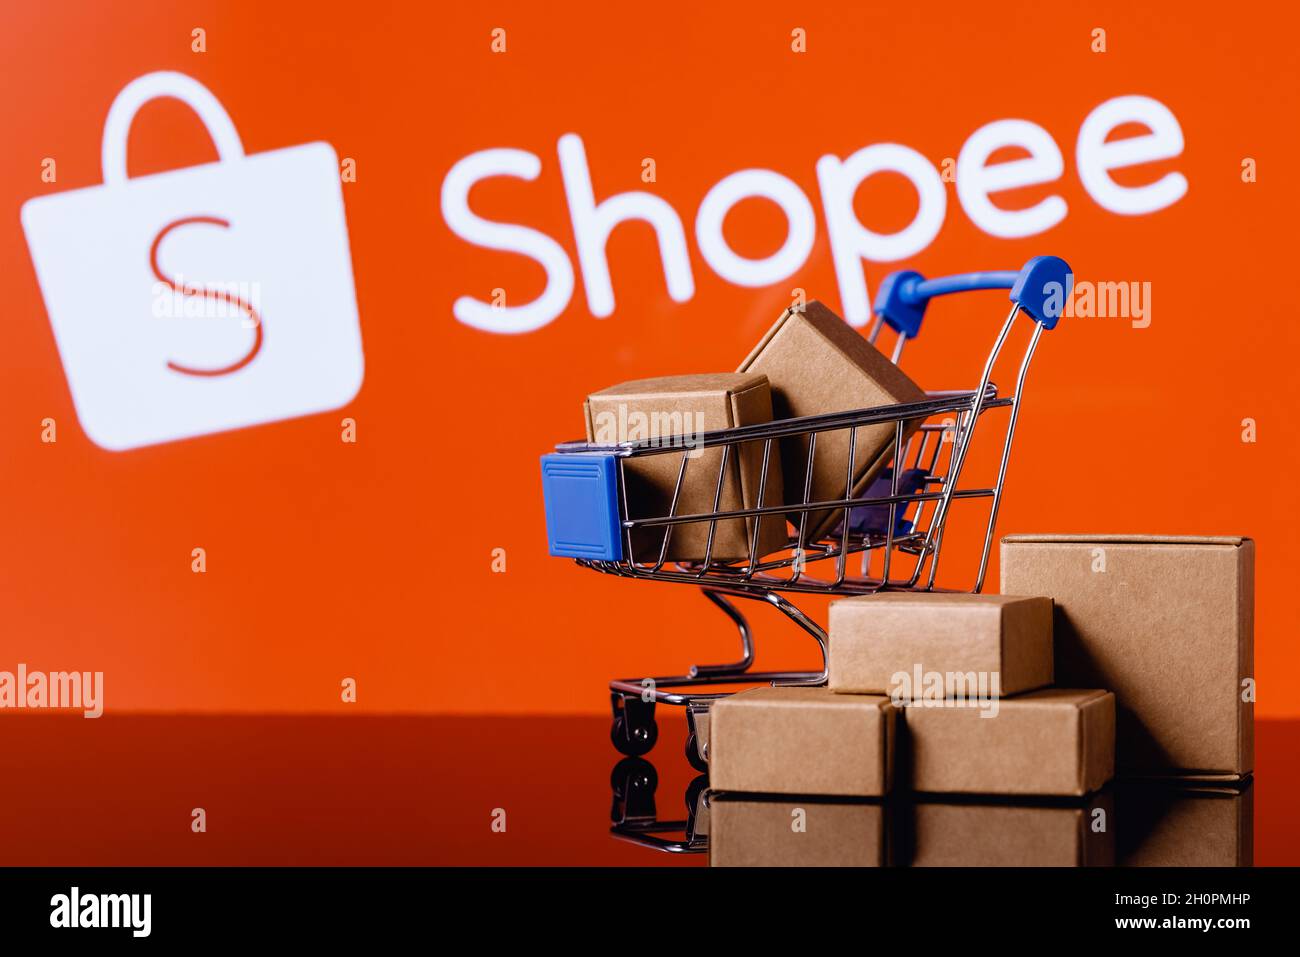 Hãy cùng khám phá thế giới mua sắm trên Shopee với những sản phẩm đa dạng và giá cả hợp lý. Đảm bảo bạn sẽ tìm thấy đủ mọi thứ bạn cần cho cuộc sống hàng ngày của mình.